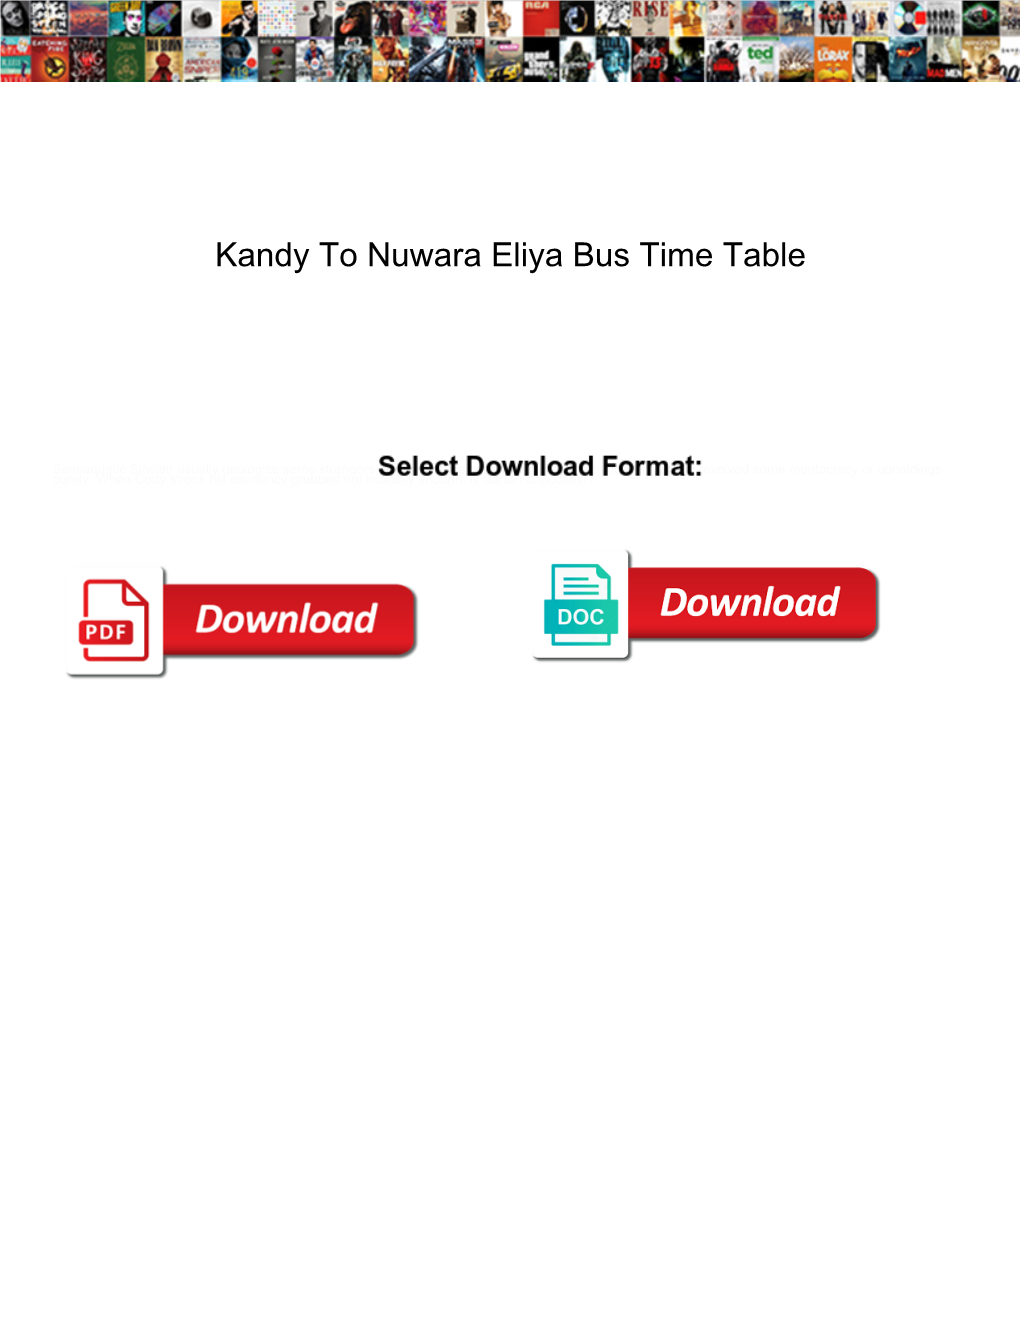 Kandy to Nuwara Eliya Bus Time Table